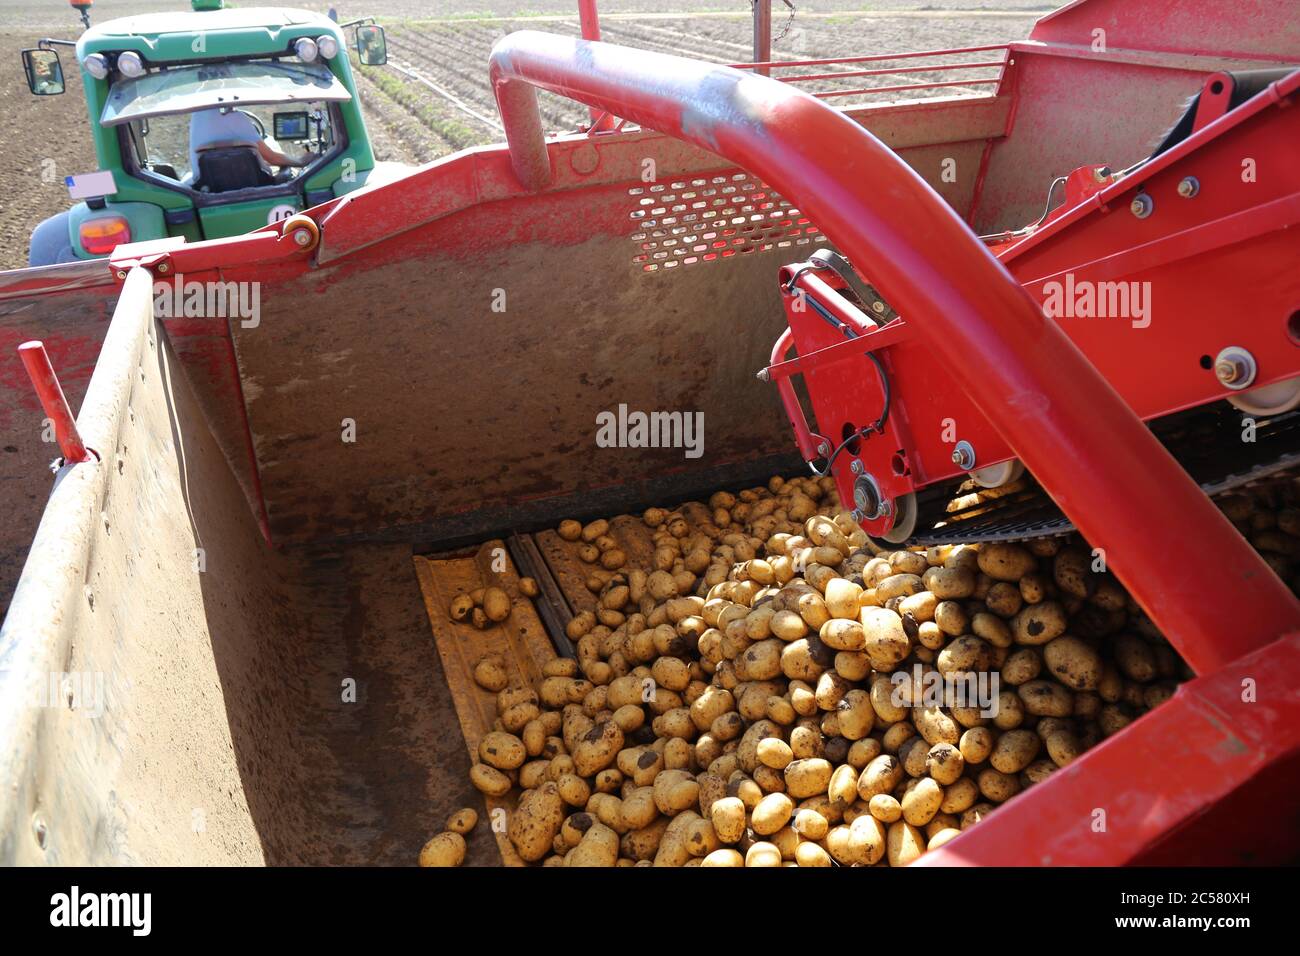 Landwirt Hartmut Magin aus Mutterstadt beim Kartoffeln Roden von Speisefrühkartoffeln in der Pfalz (Mutterstadt, Rheinland-Pfalz) Foto Stock